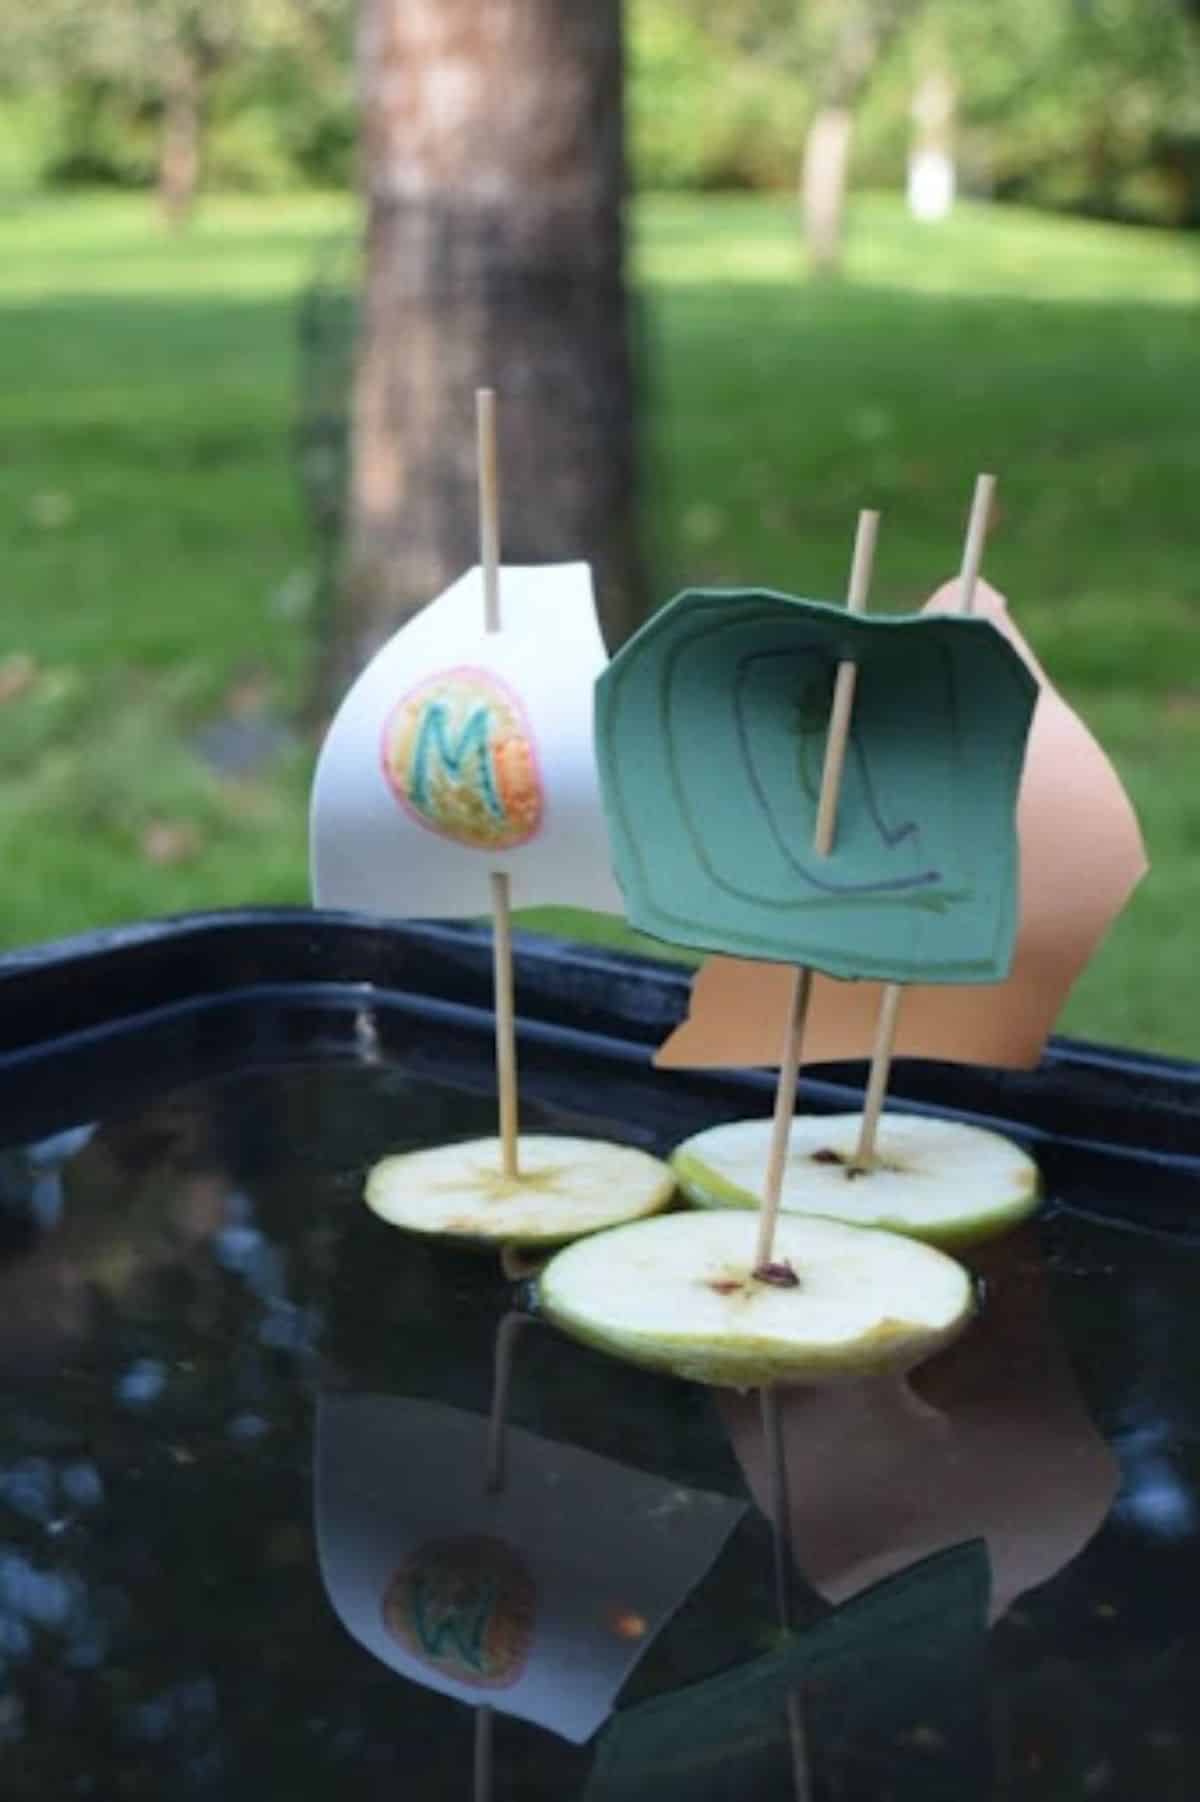 Apple Boat craft